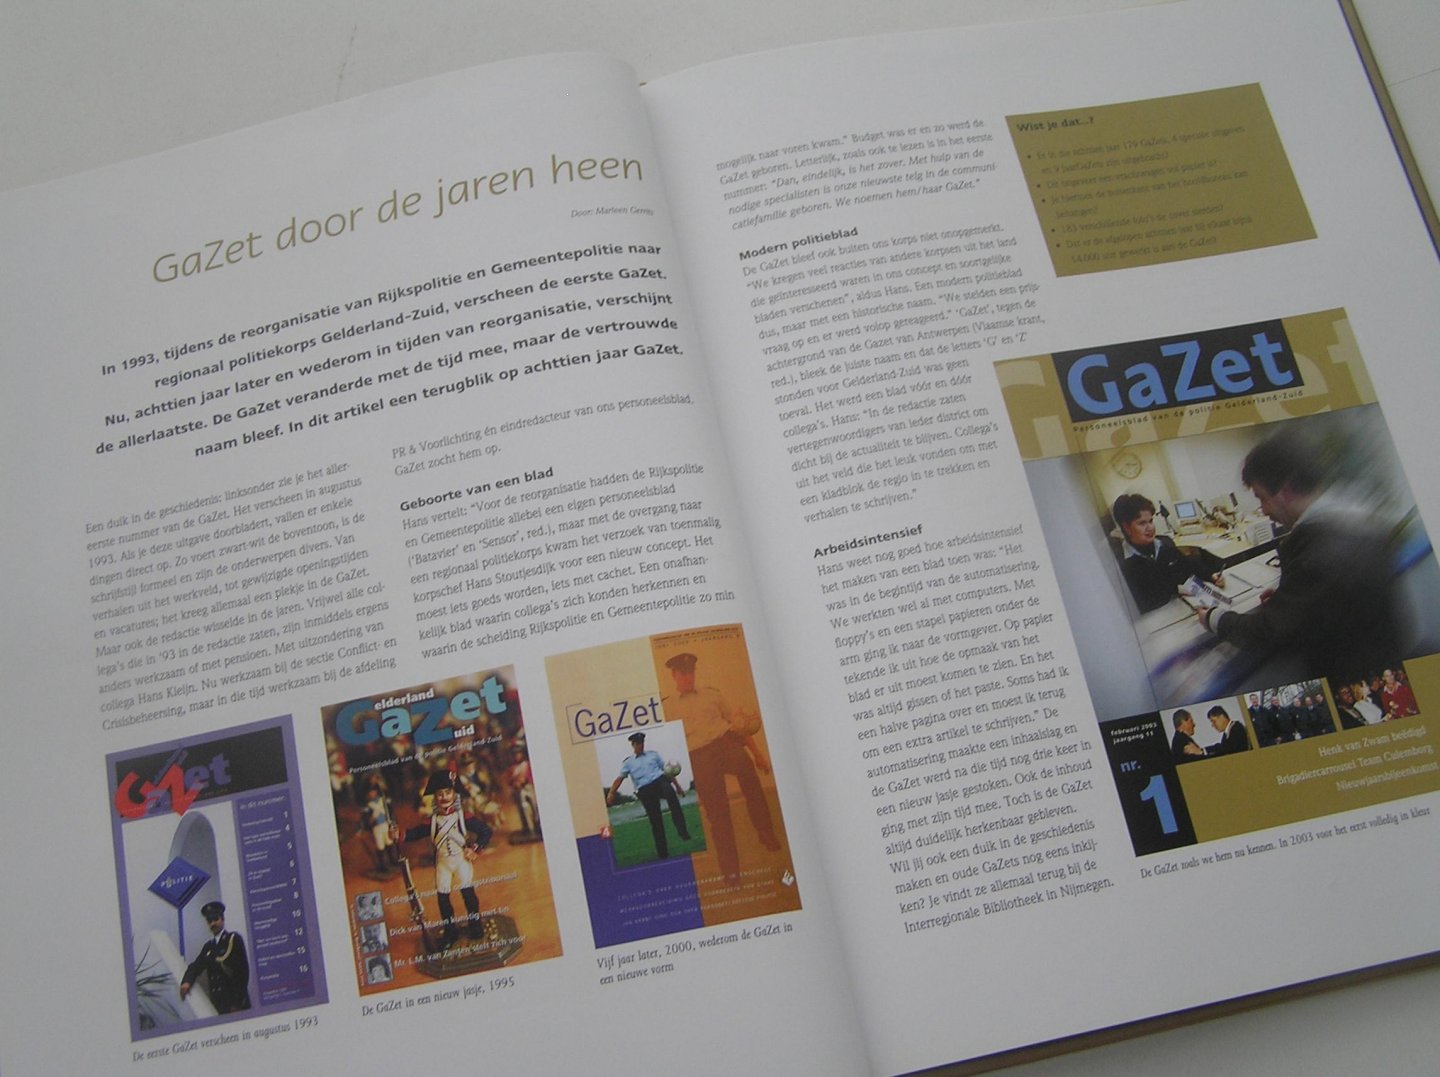 Voet Moniek ( hoofd redactie) - GAZET 1993-2011 Personeelsblad van Politie Gelderland-Zuid